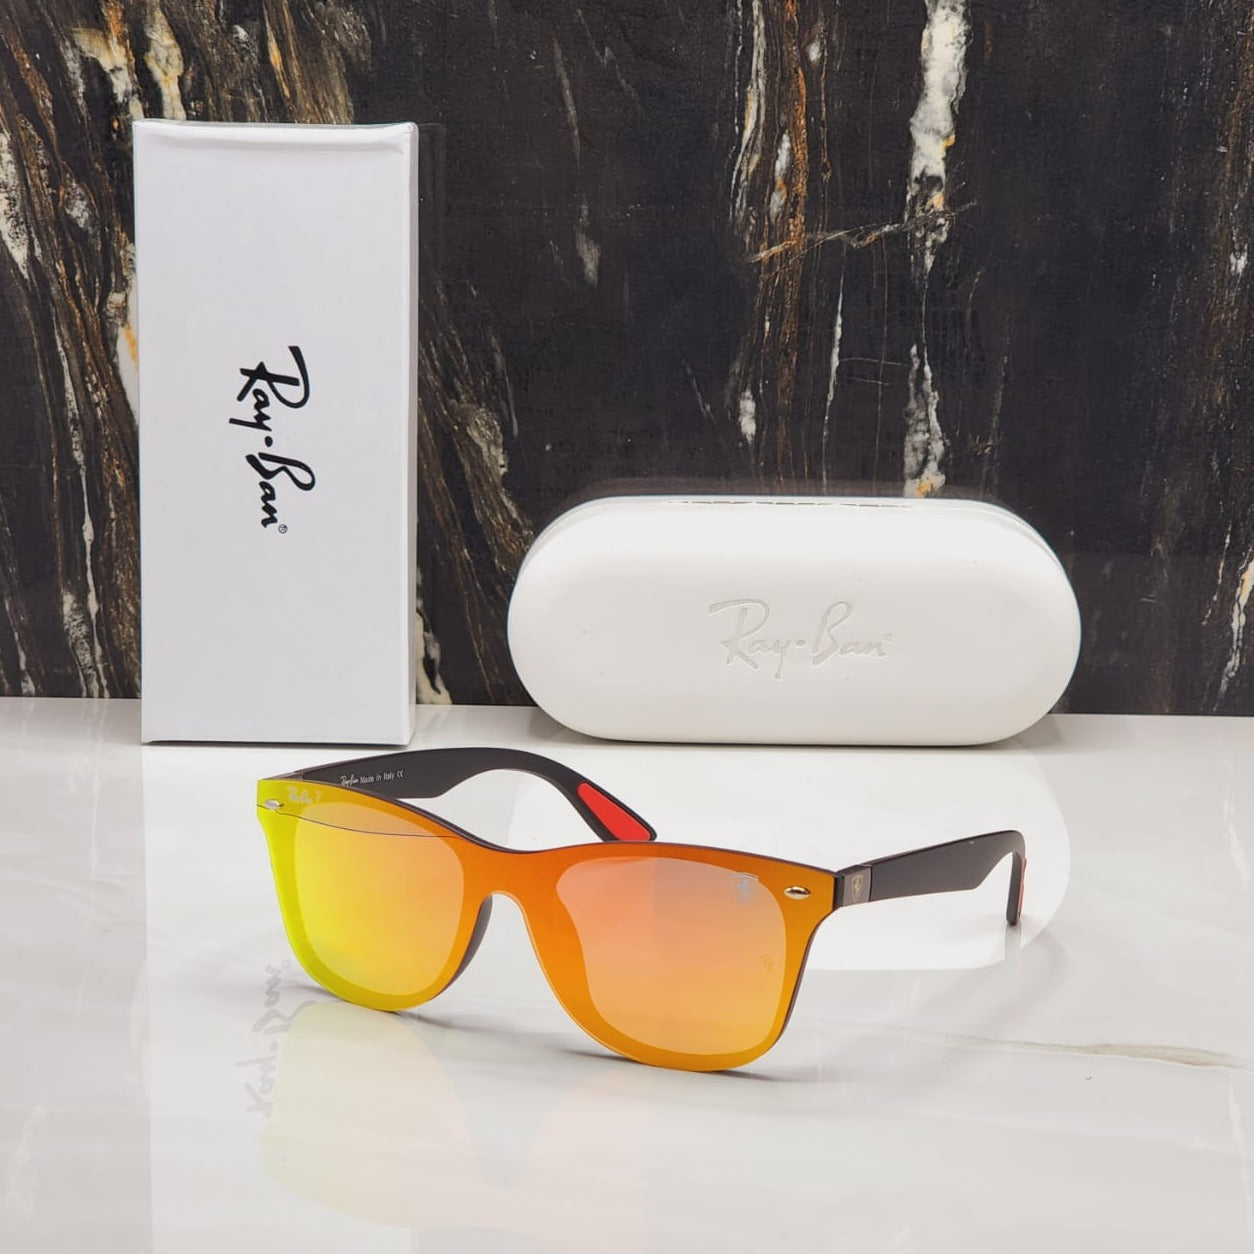 Amazing Polarized Unisex Sunglasses - AmazingBaba